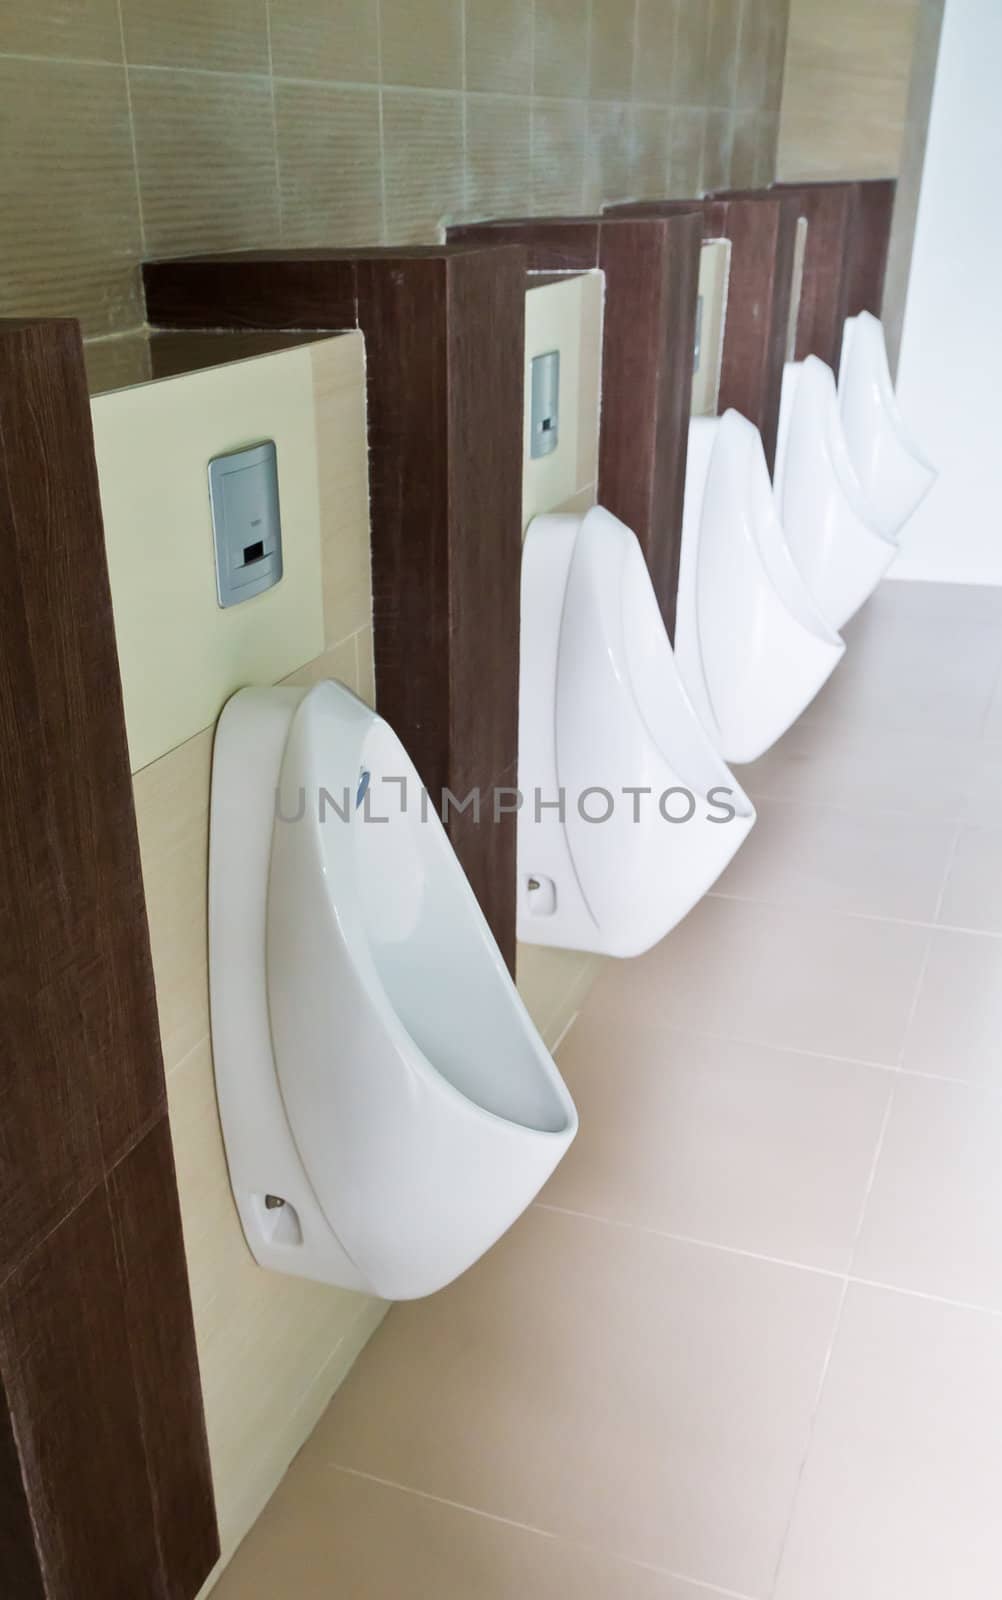 Urinals in the men's bathroom.